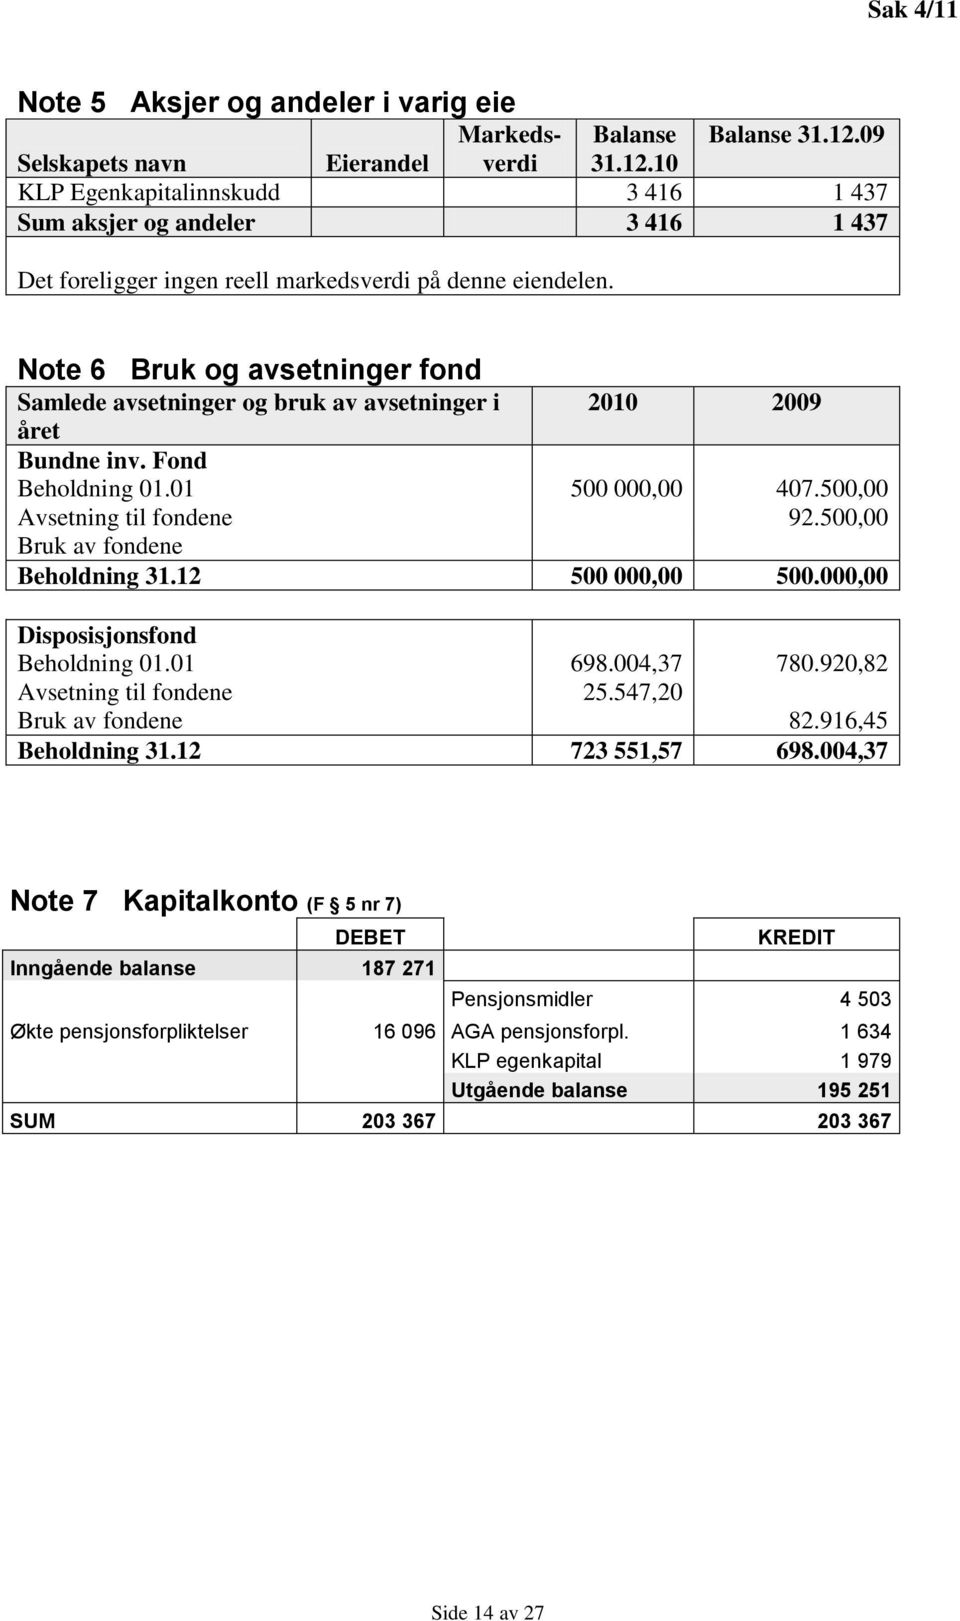 Note 6 Bruk og avsetninger fond Samlede avsetninger og bruk av avsetninger i 2010 2009 året Bundne inv. Fond Beholdning 01.01 500 000,00 407.500,00 Avsetning til fondene 92.